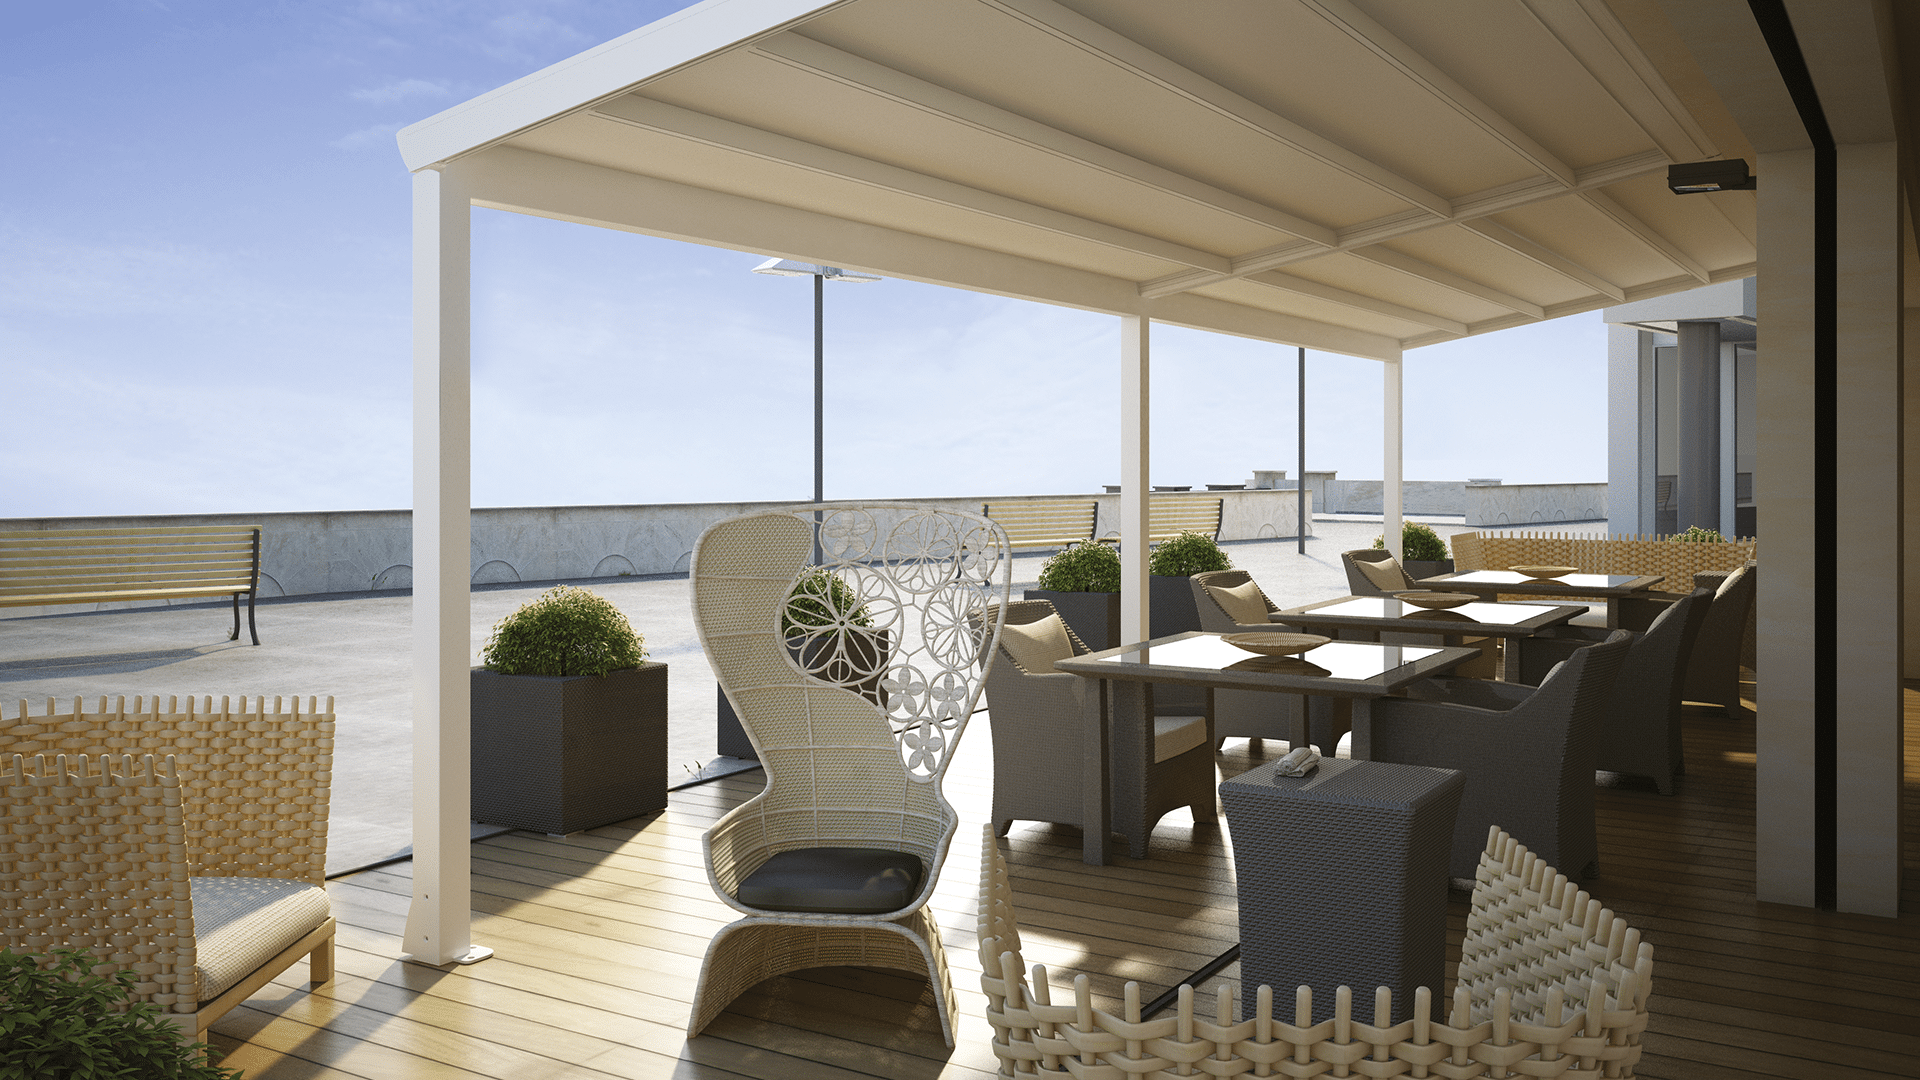 Hella präsentiert eine weiße Pergola-Terrassenüberdachung, darunter sind Tische mit Rattanstühlen, blauer Himmel und Buchsbäumen auf einer geräumigen Terrasse.